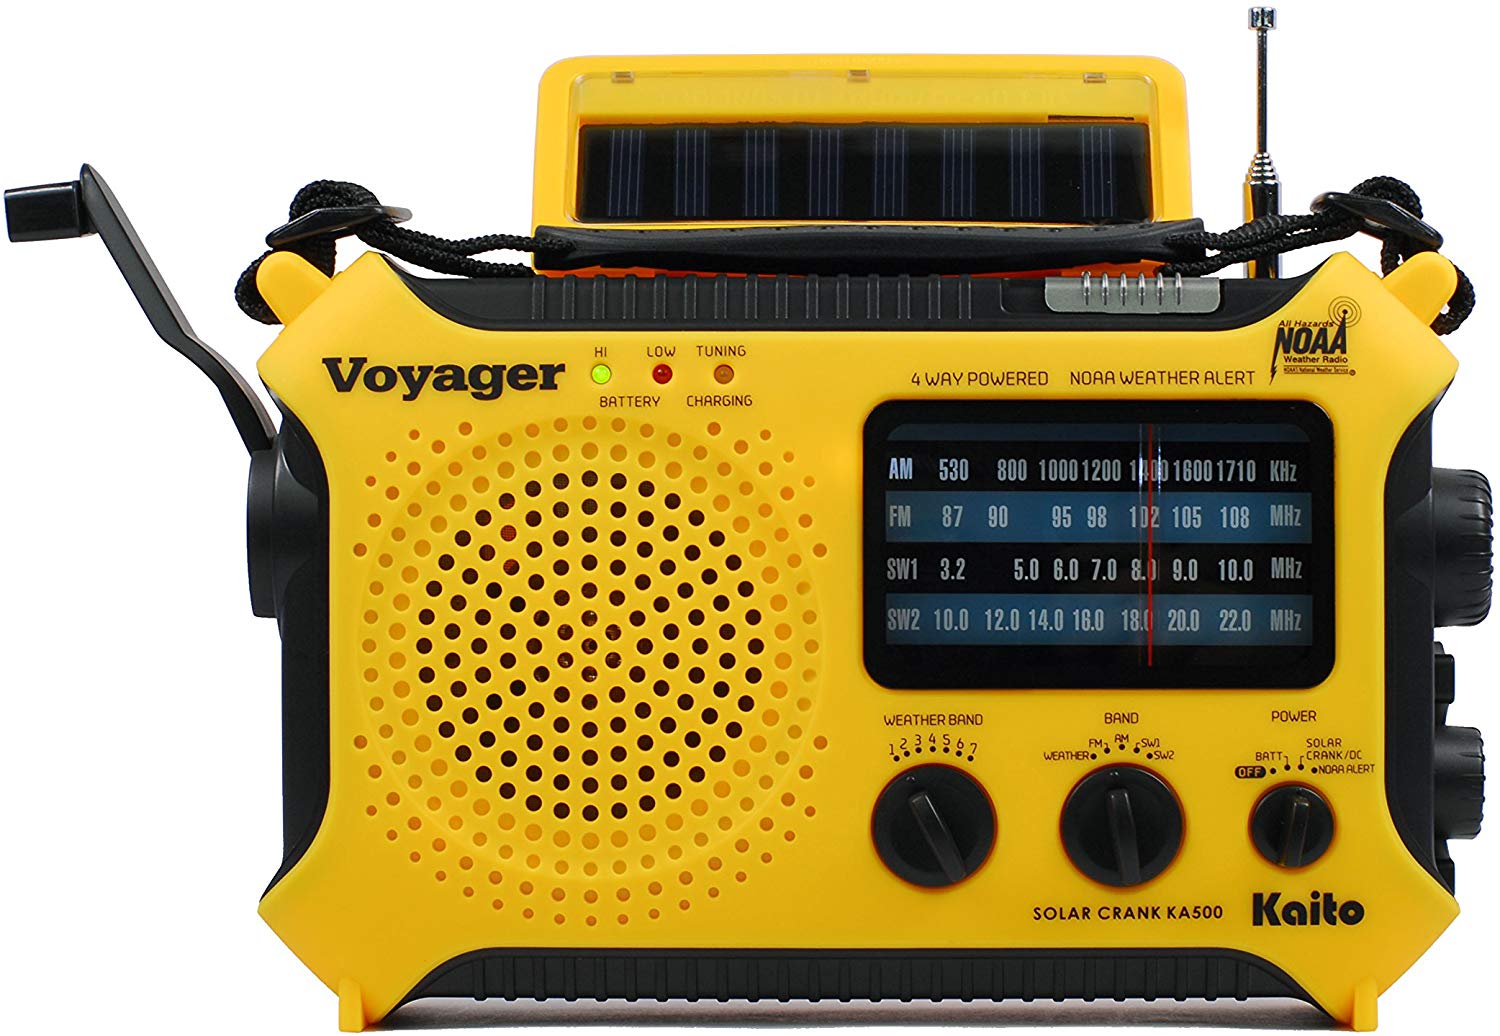 Kaito Voyager emergency radio render